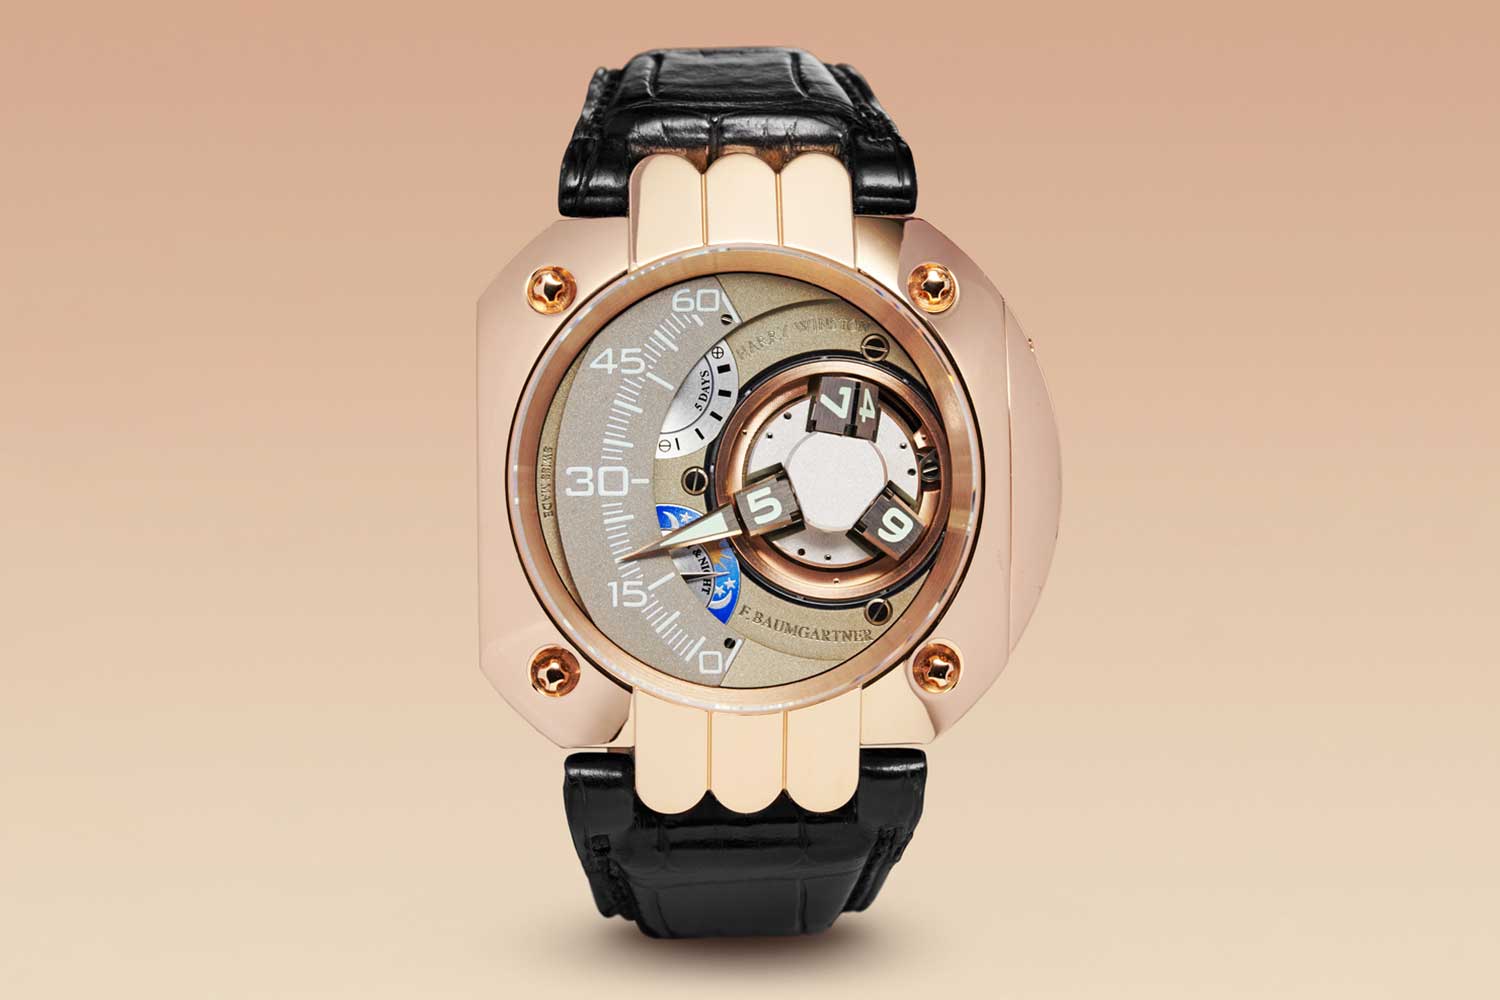 Đấu giá đồng hồ của Ineichen Auctioneers – Chủ đề “La Vie en Rose” (Phần 1)